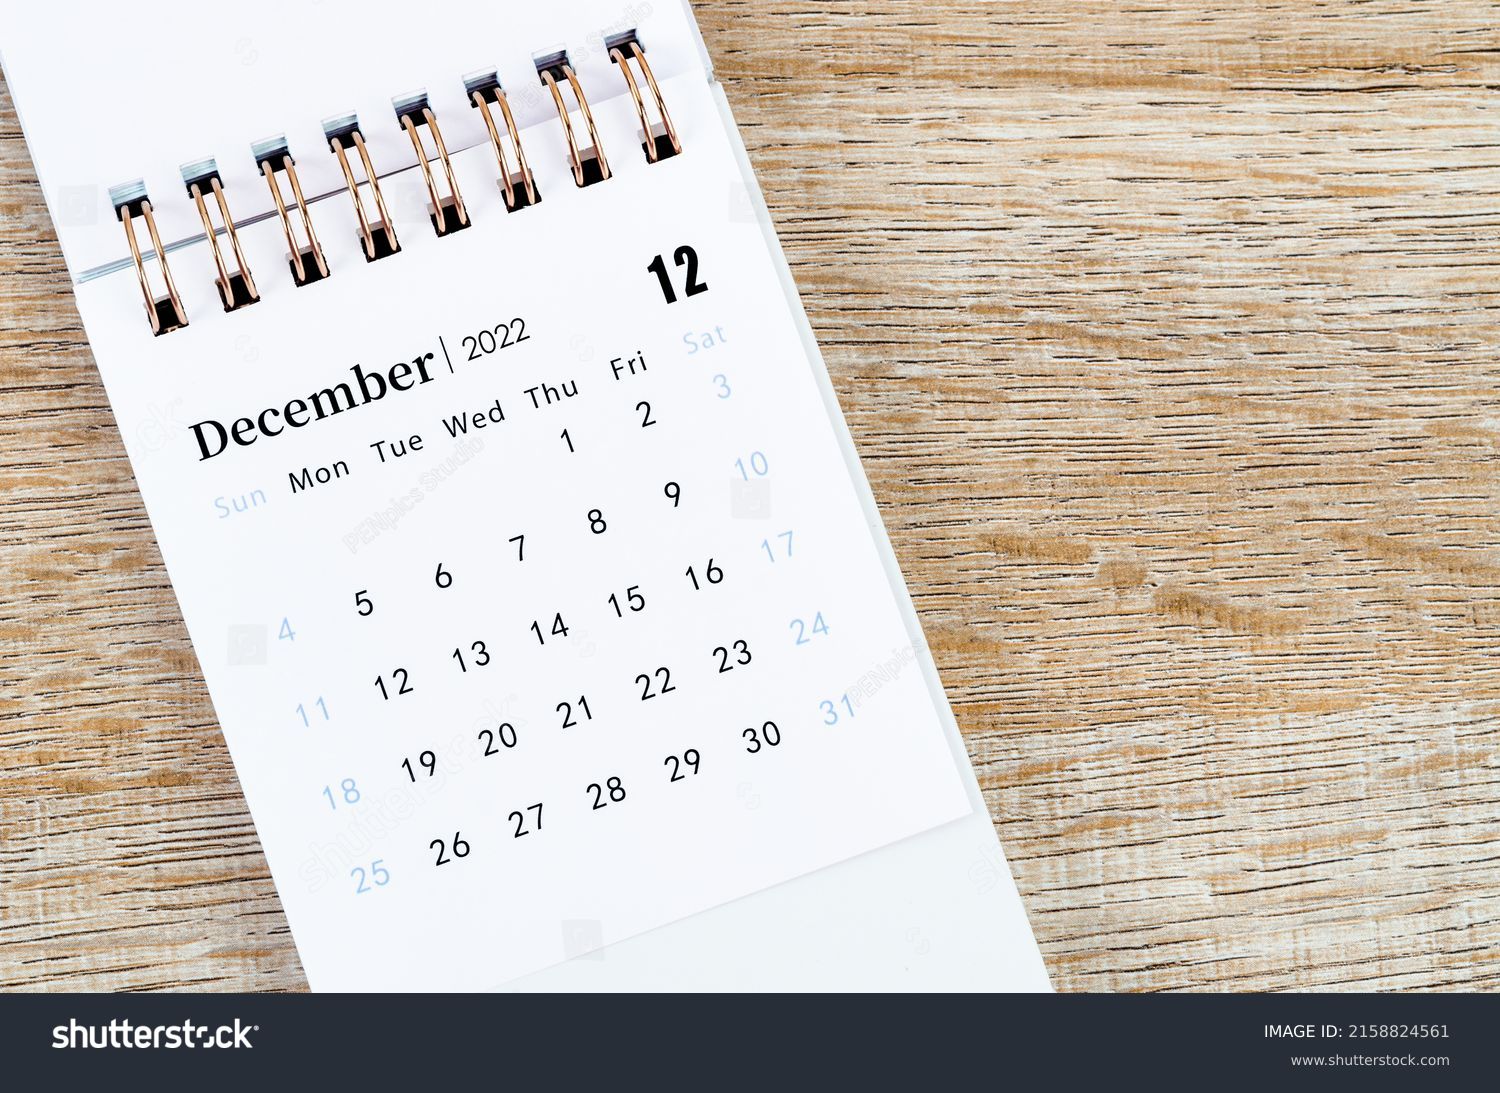 The December 2022 desk calendar on wooden background. #2158824561